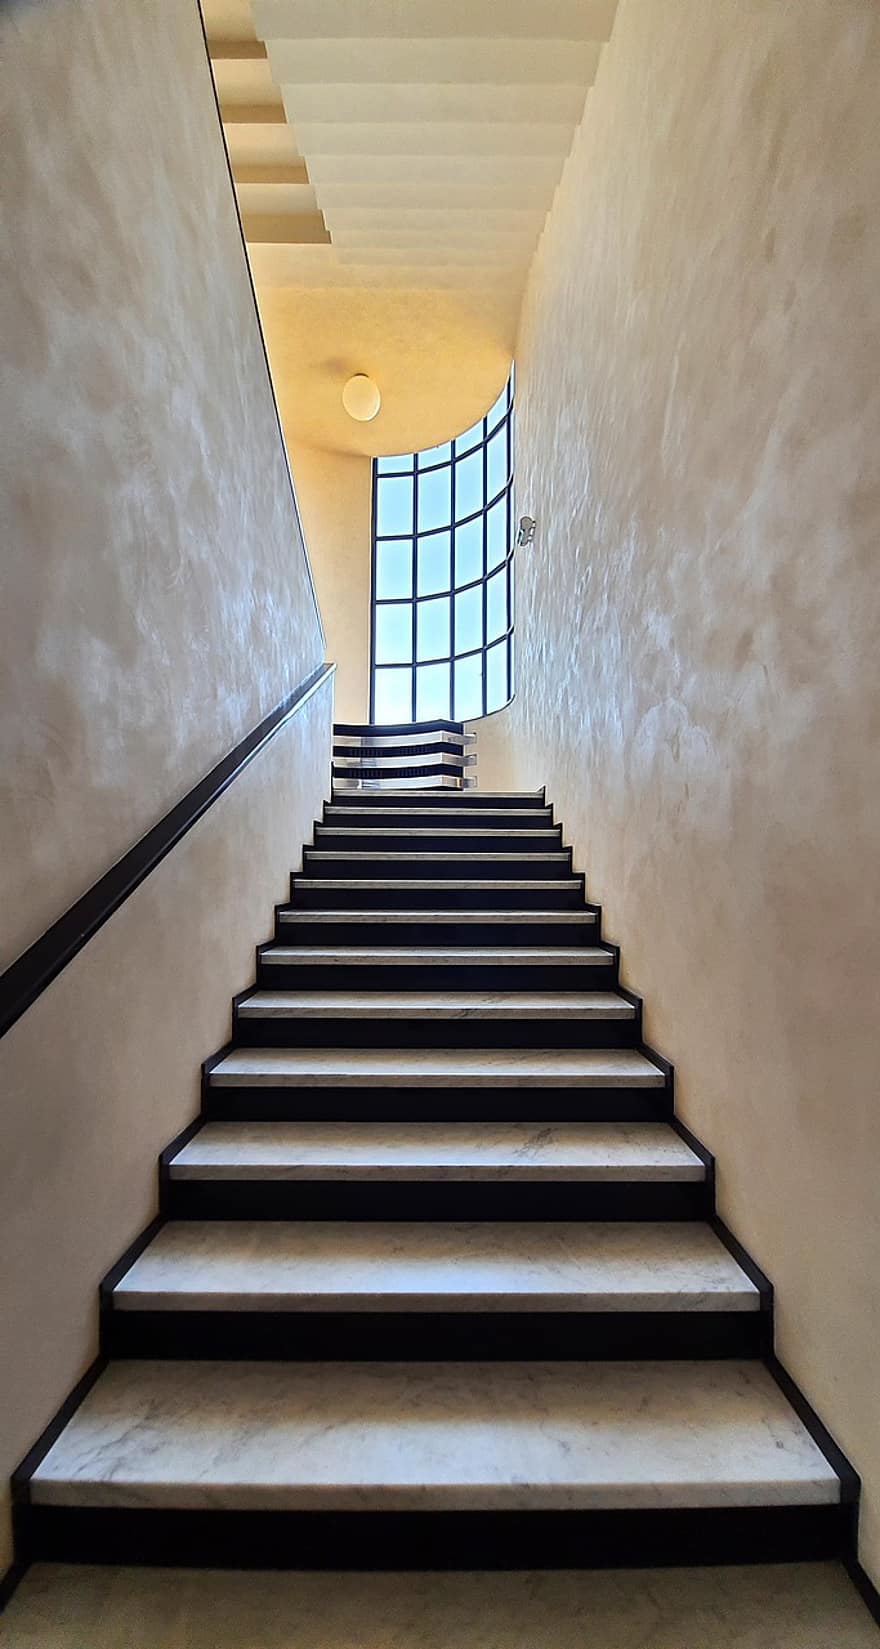 Вілла Кавроа, Франція, дизайн інтер'єру, архітектура, особняк, Особняк в стилі модерн, сучасна архітектура, сходи, в приміщенні, підлогове покриття, кроки